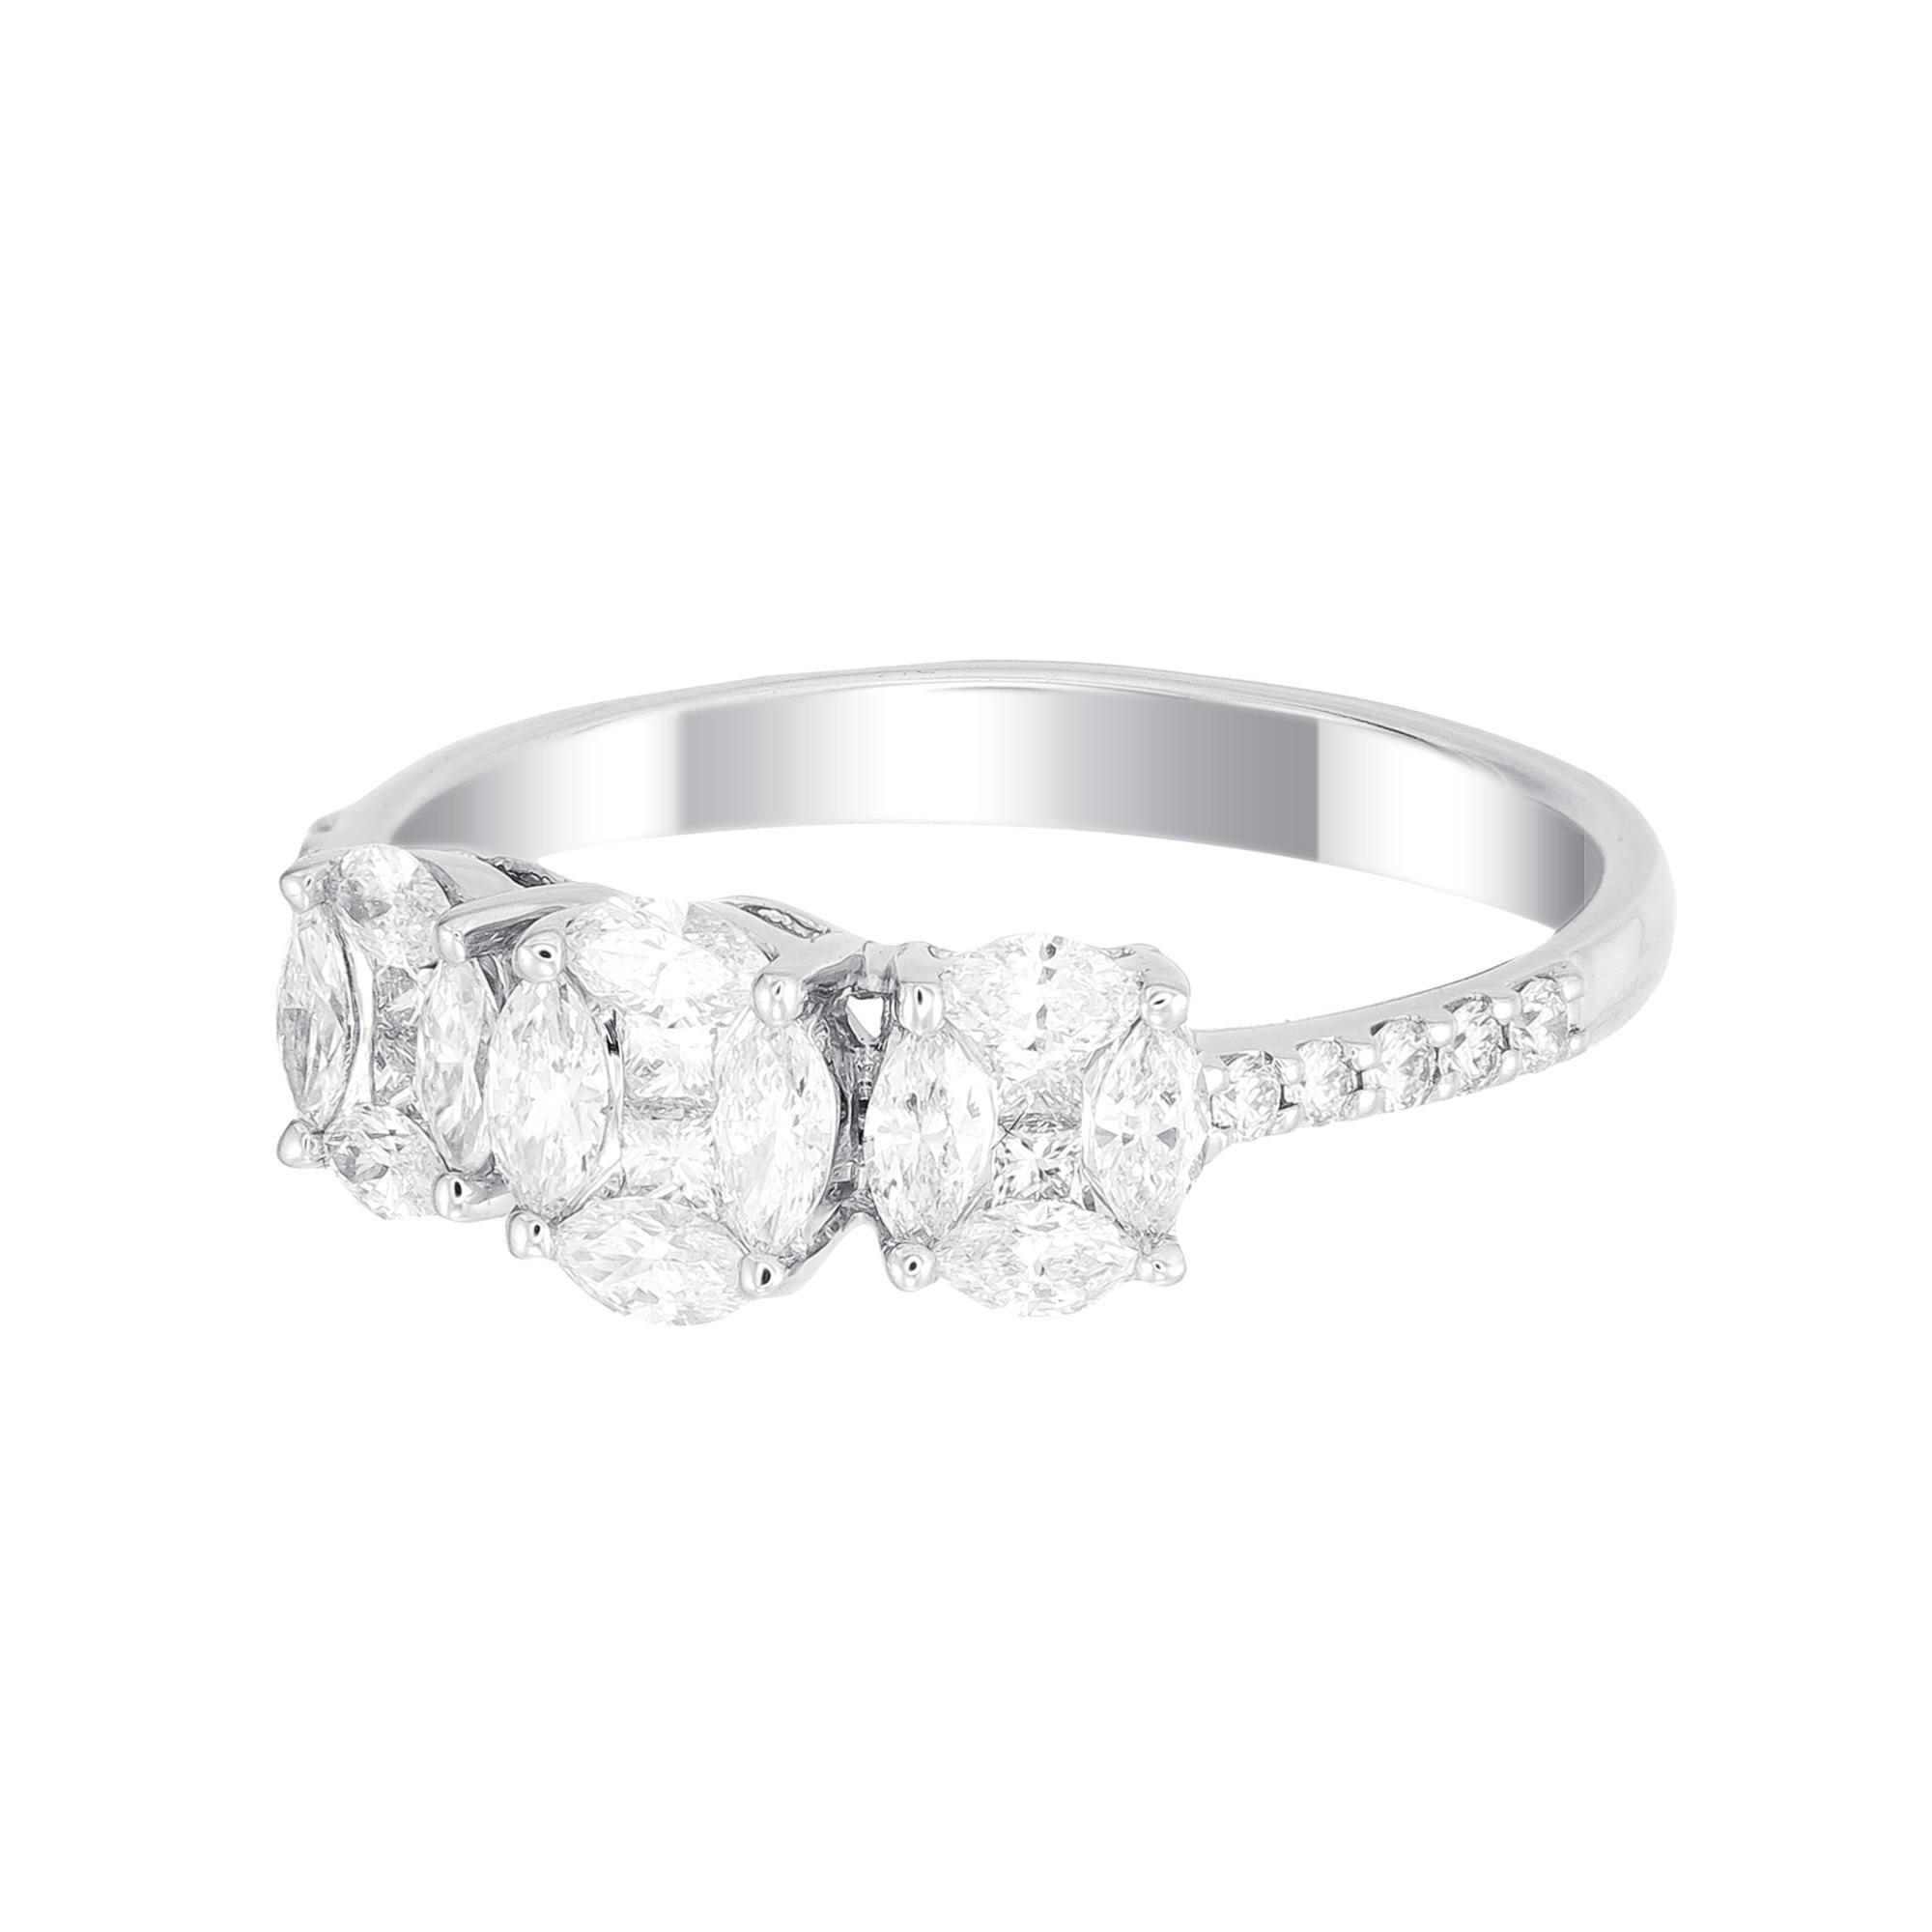 Romantic 18 Karat White Gold Trio Oval Illusion Diamond Wedding Ring